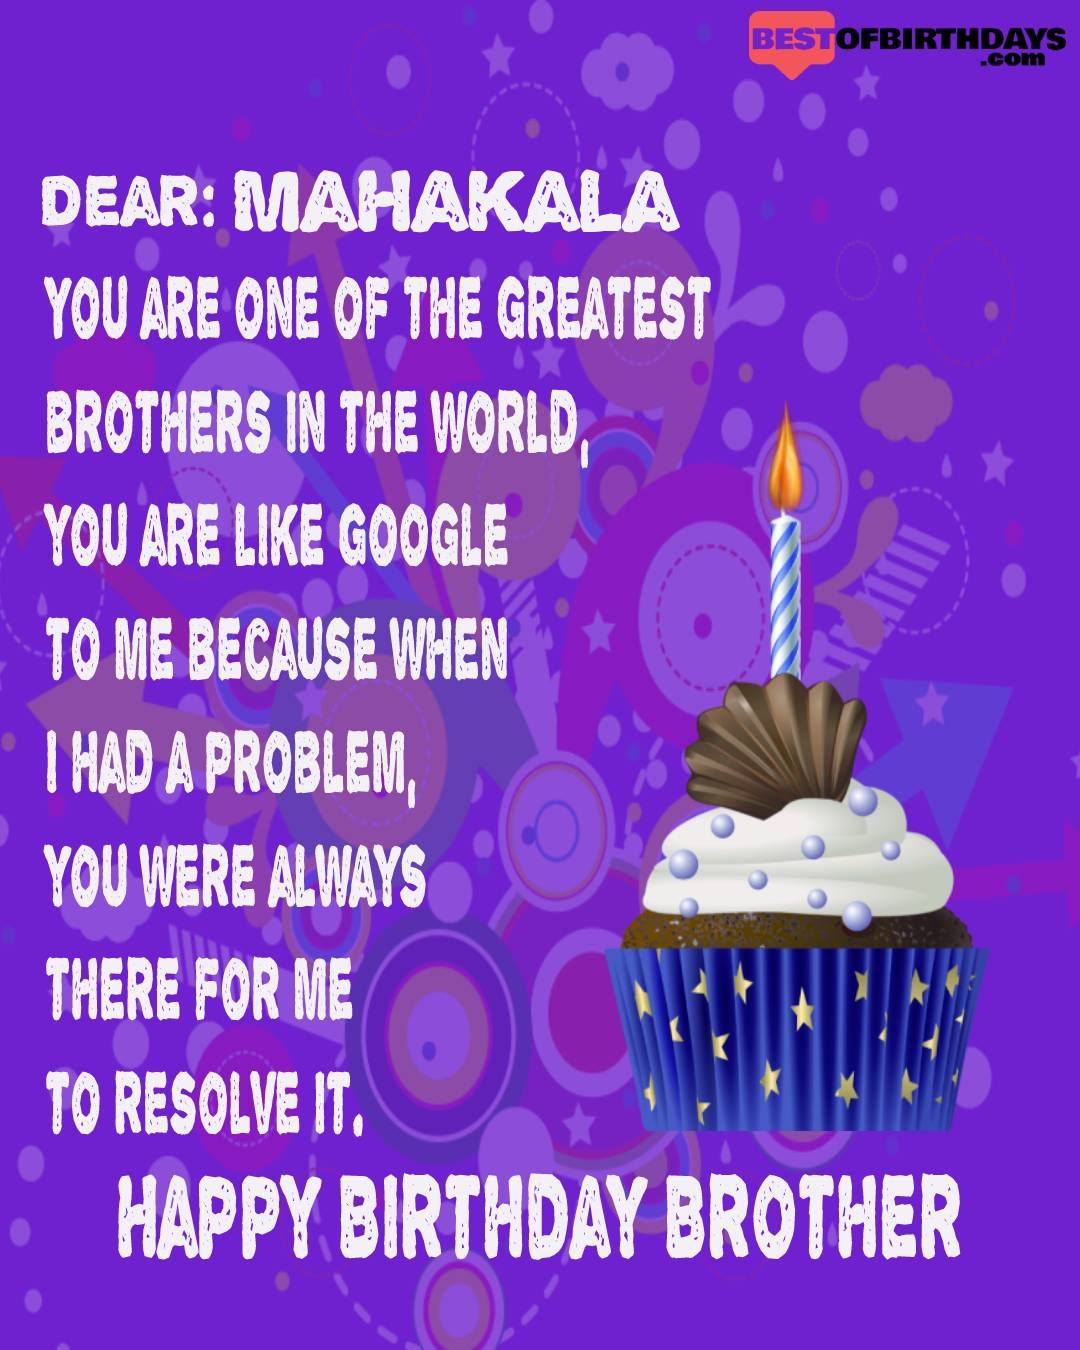 Happy birthday mahakala bhai brother bro